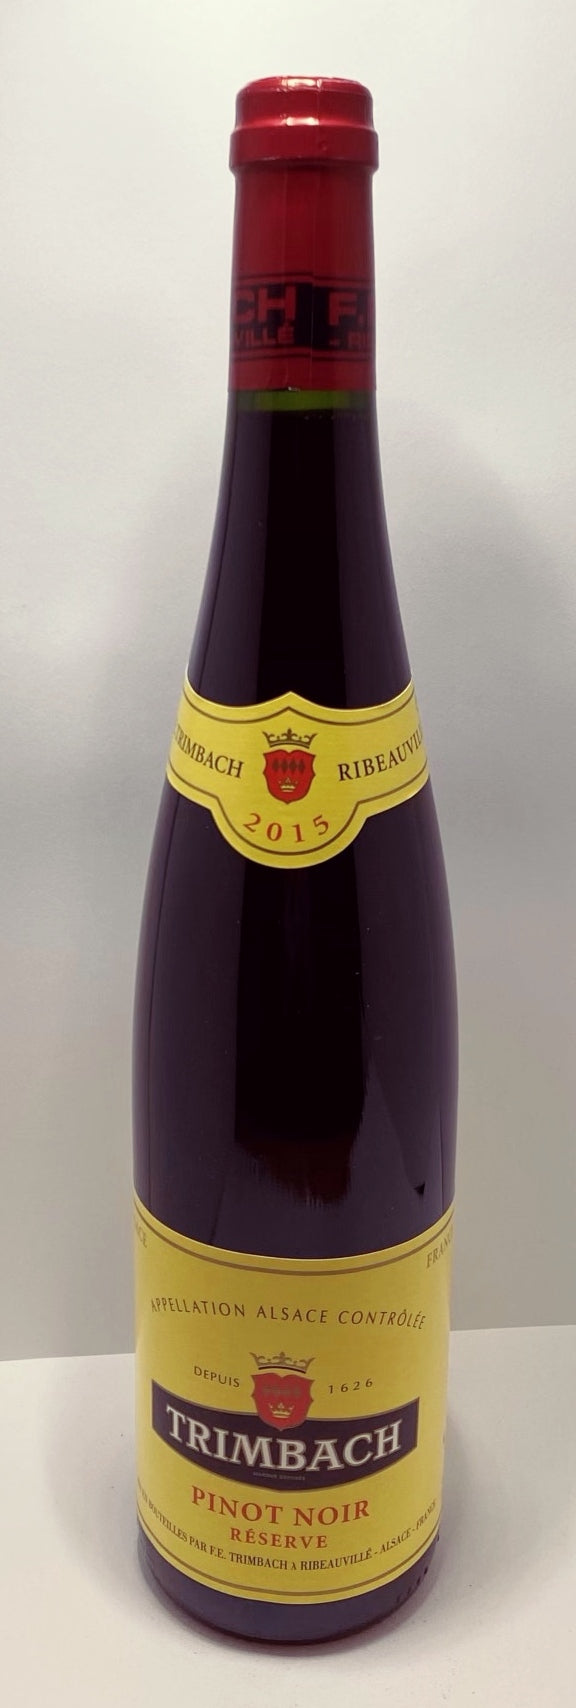 2014 Trimbach Pinot Noir Reserve, Alsace